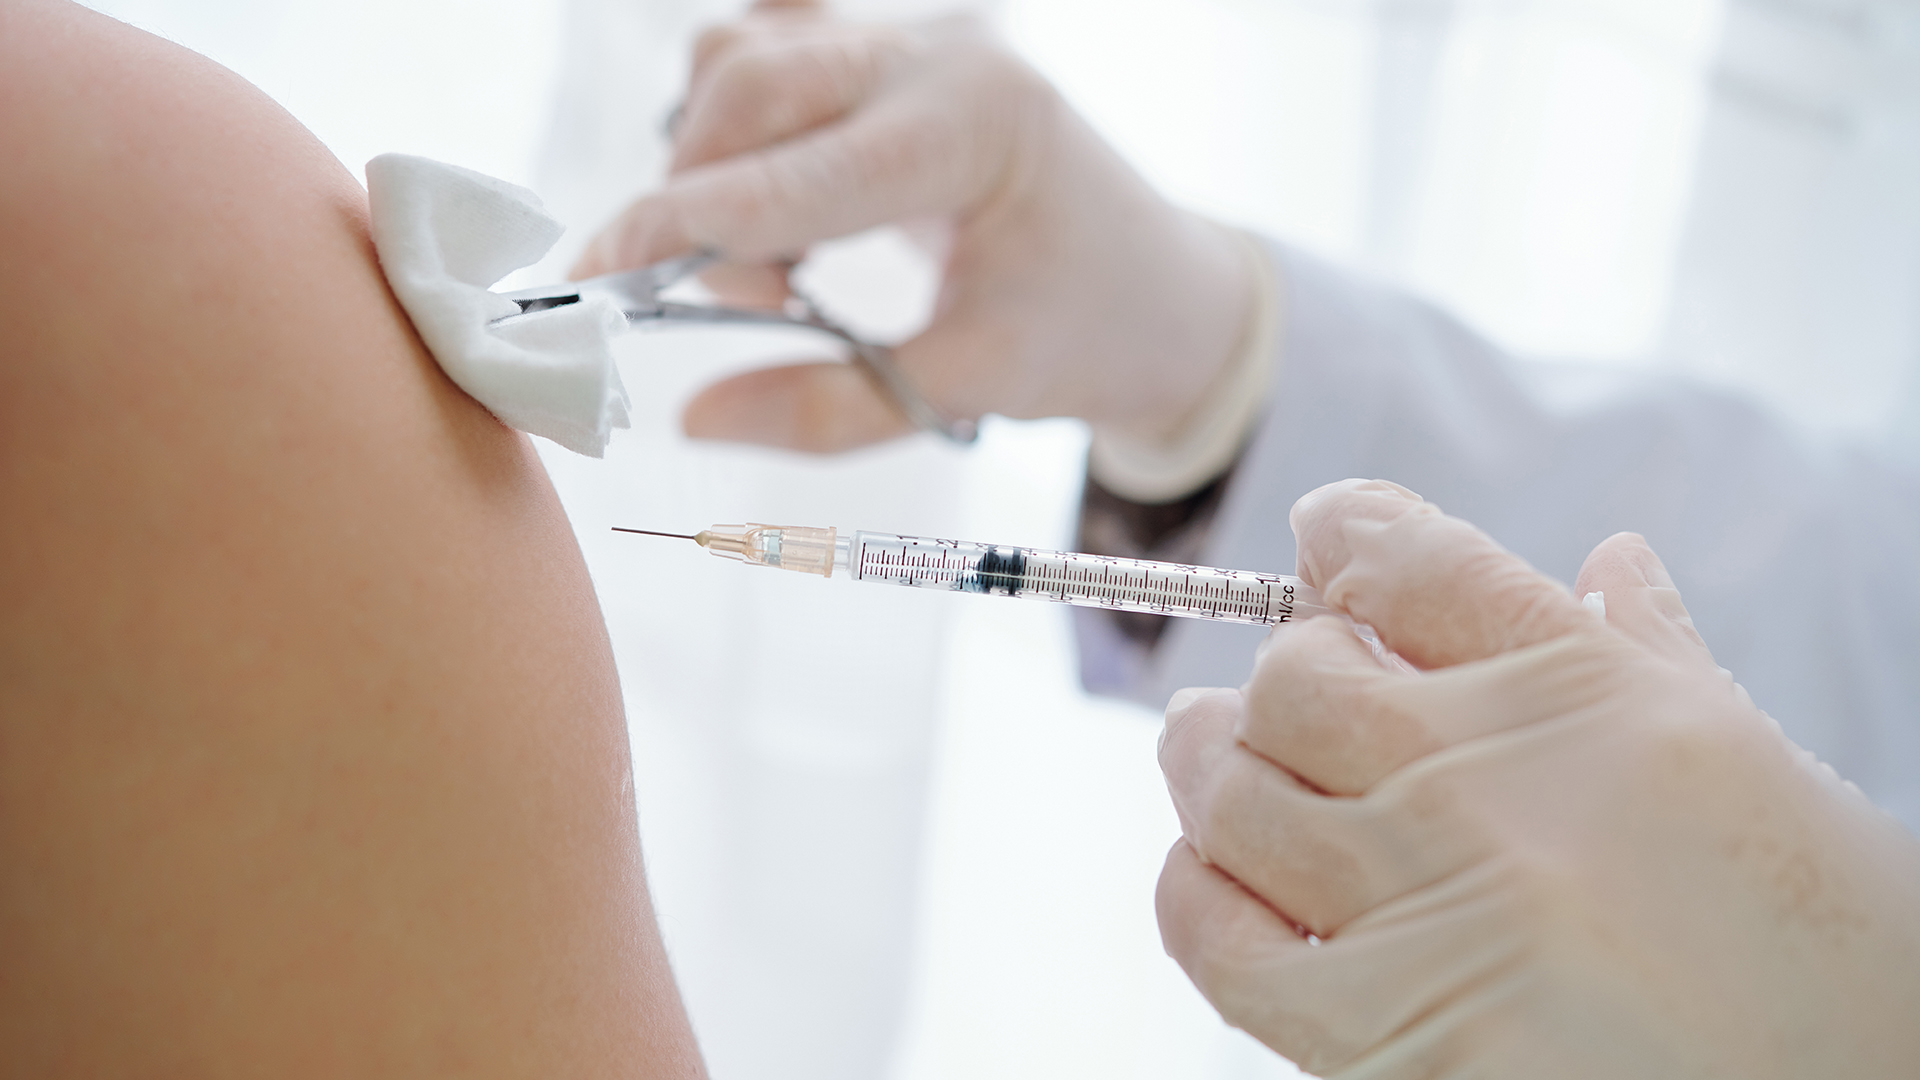 Santé publique Ottawa a commencé ce week-end à administrer le vaccin contre la variole du singe, une semaine après qu'un premier cas ait été détecté dans la capitale.